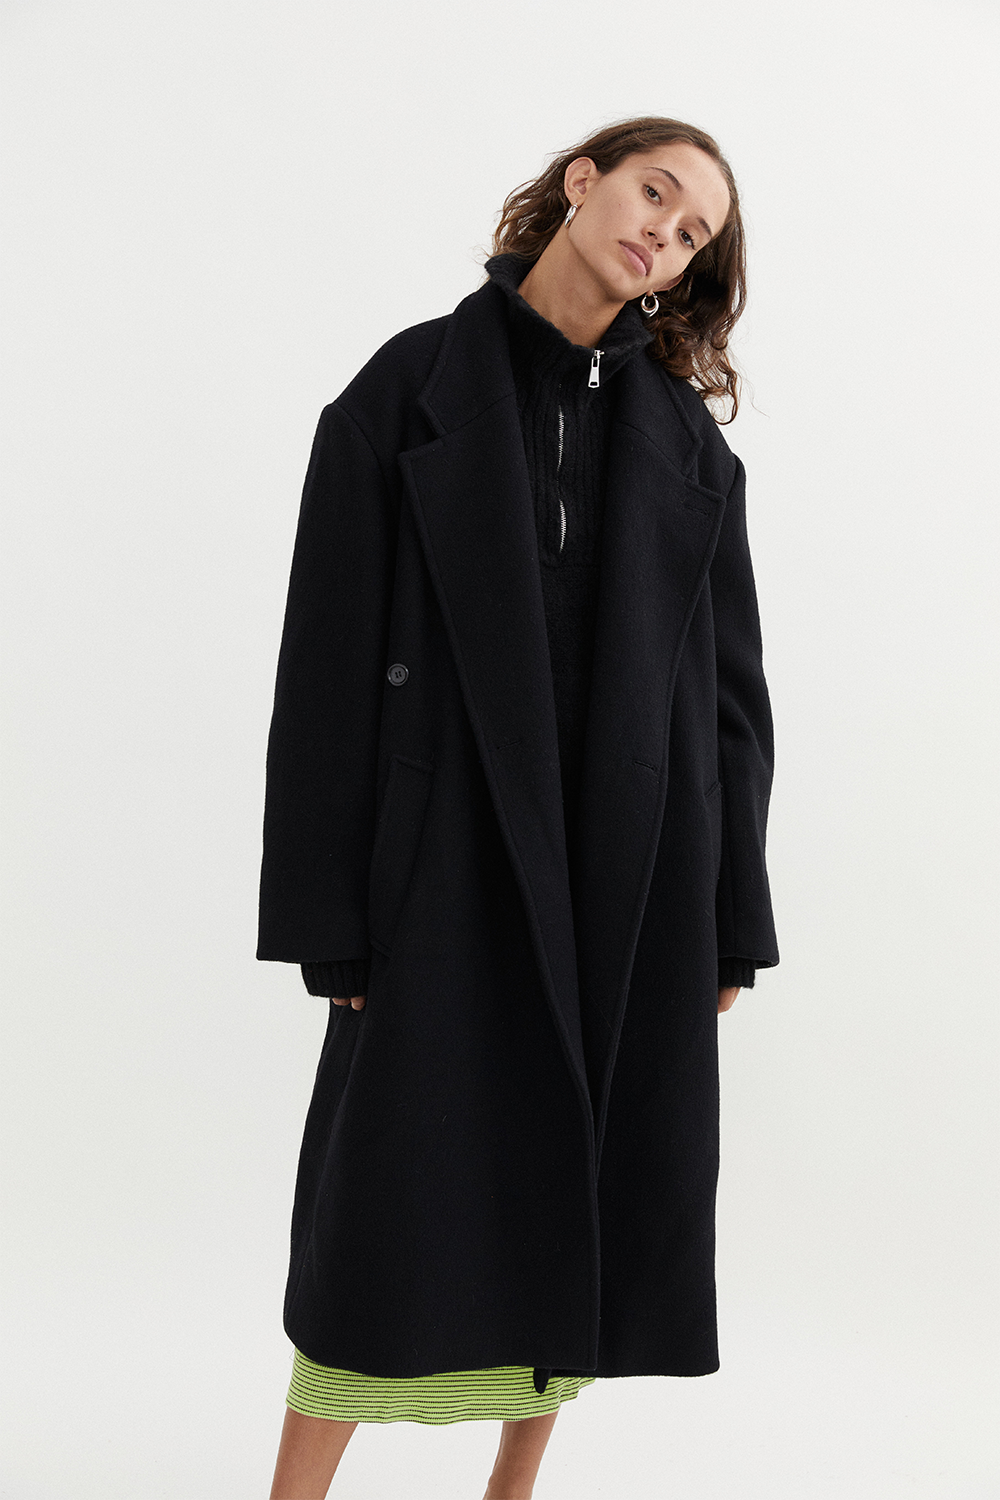 Adeline Coat in Black - BLANCA